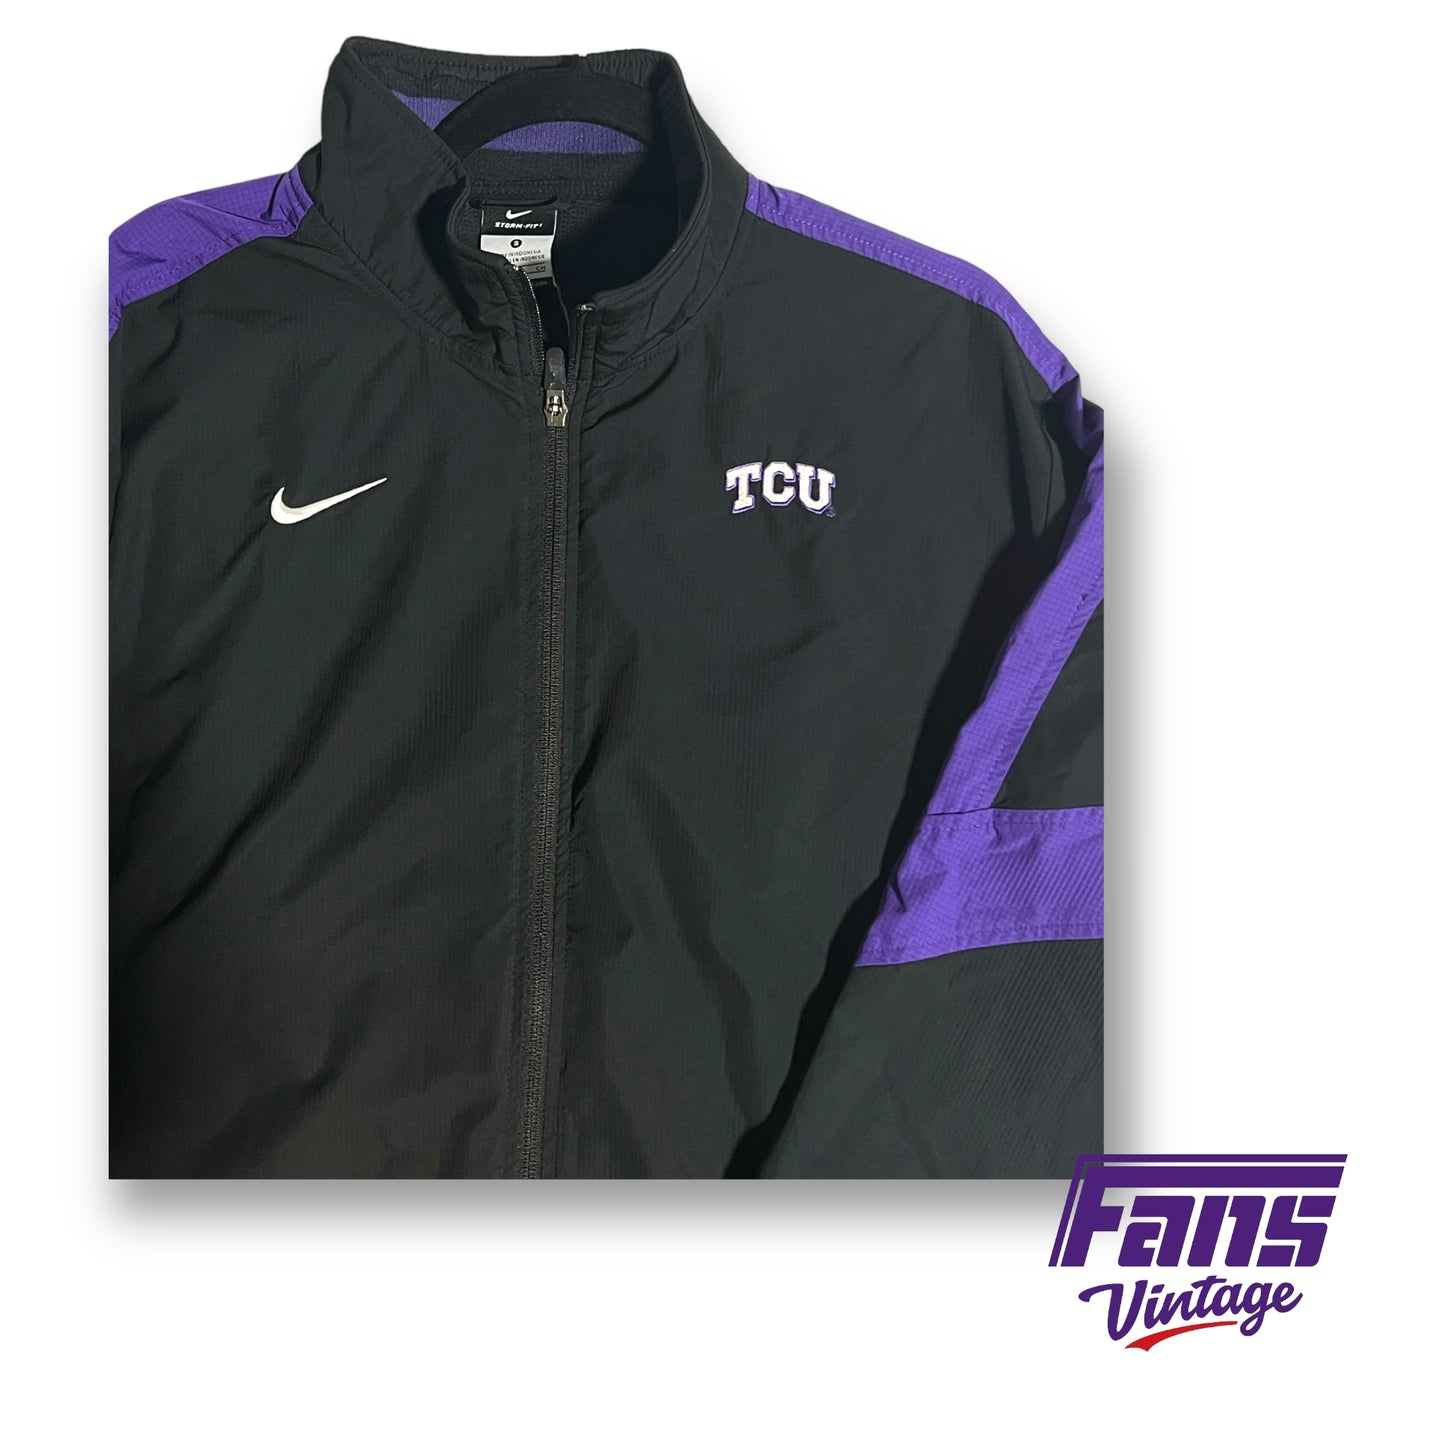 Nike Storm-fit Adv vintage TCU team issued jacket